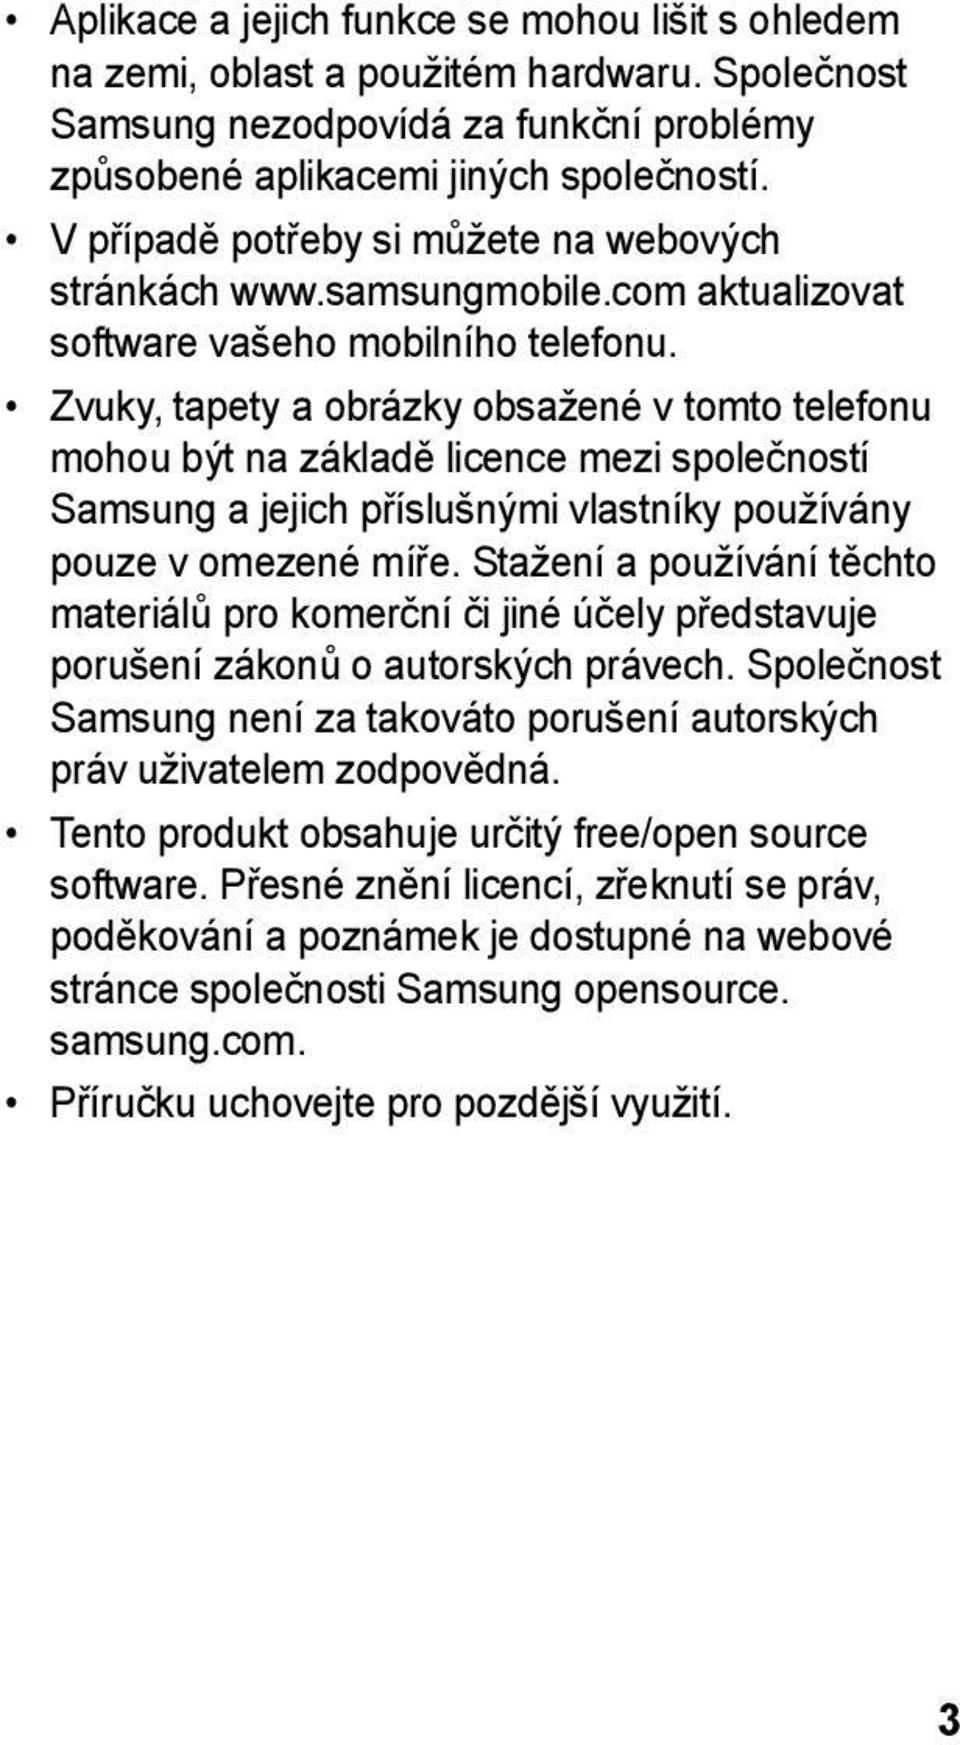 Zvuky, tapety a obrázky obsažené v tomto telefonu mohou být na základě licence mezi společností Samsung a jejich příslušnými vlastníky používány pouze v omezené míře.